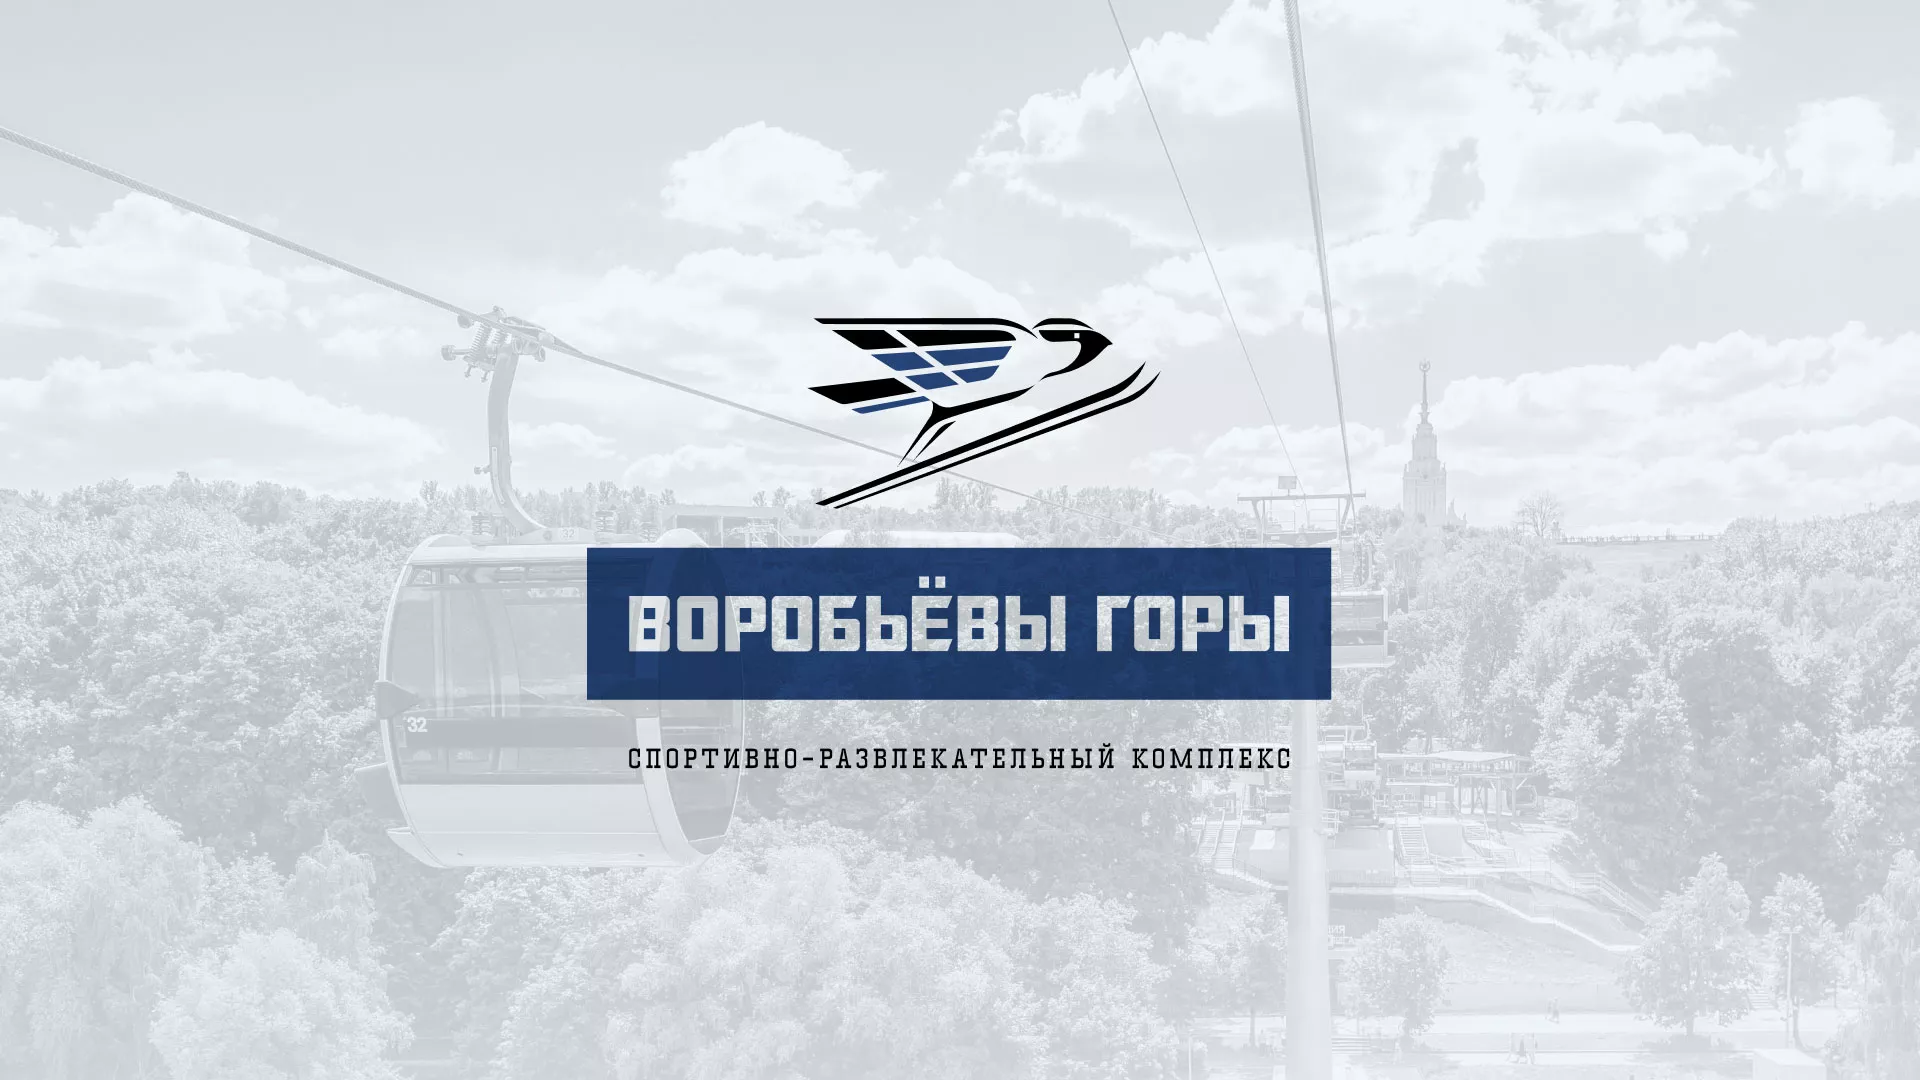 Разработка сайта в Зеленоградске для спортивно-развлекательного комплекса «Воробьёвы горы»